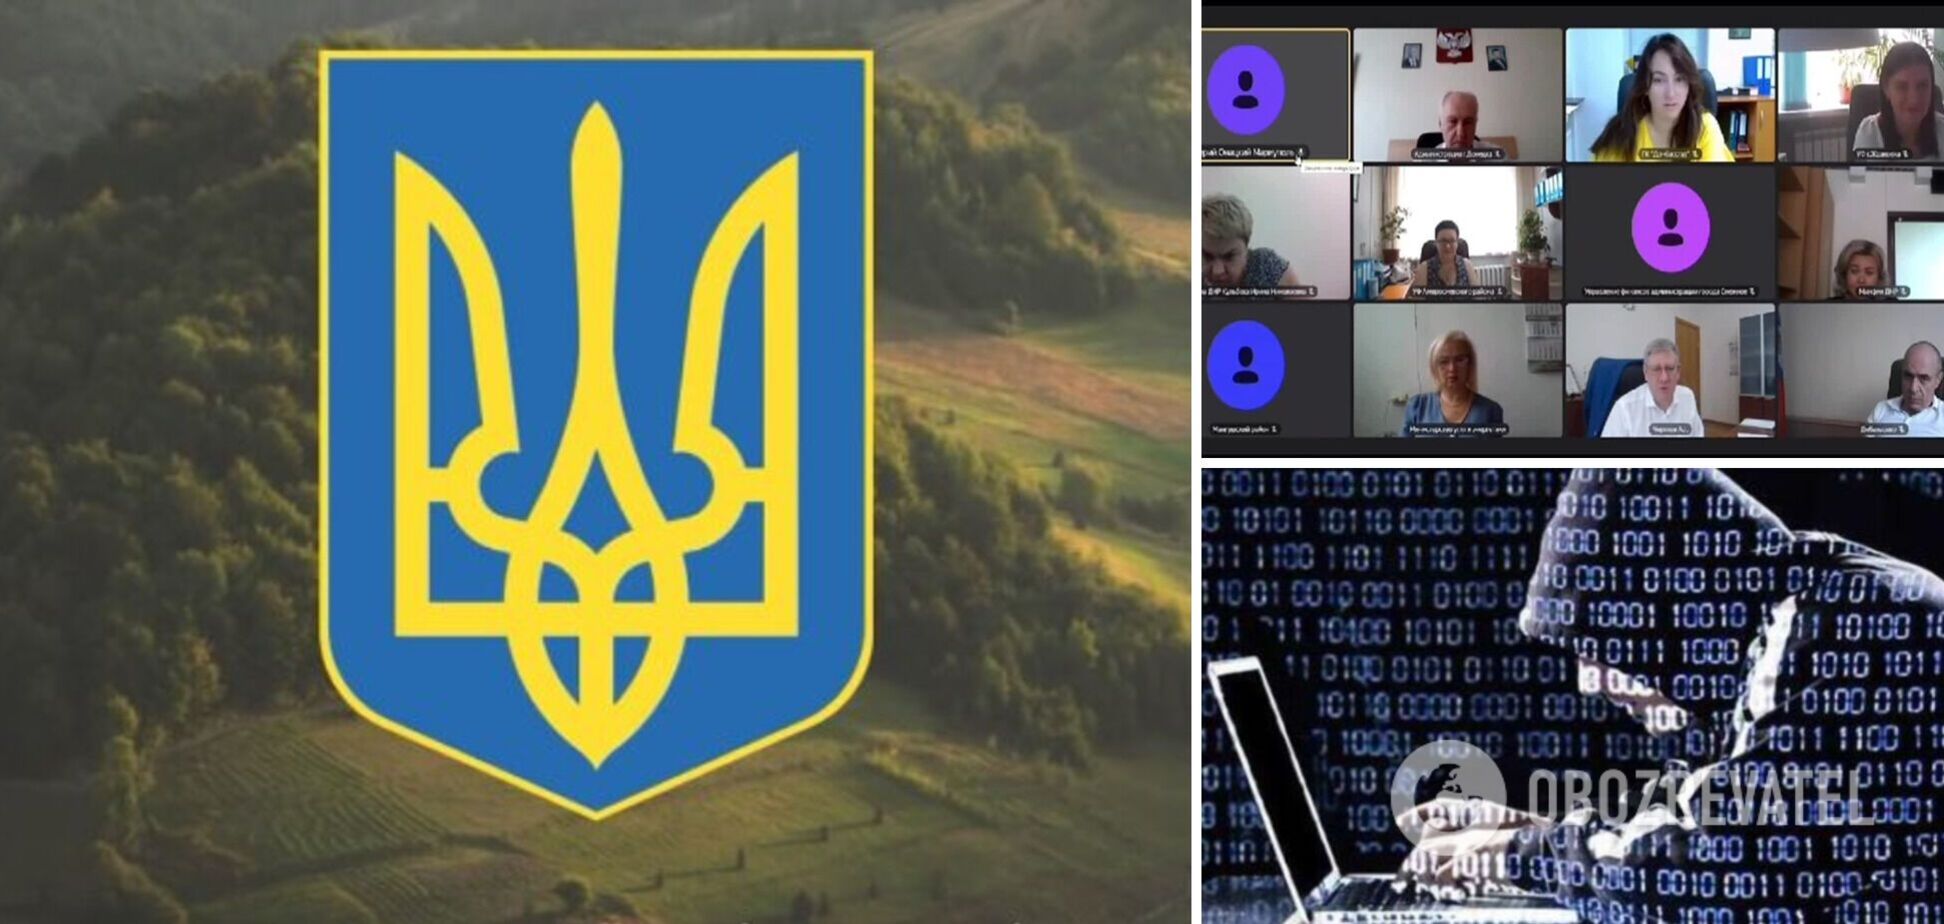 Українські хакери змусили чиновників 'ДНР' слухати гімн України і пісню 'Батько наш Бандера'. Відео